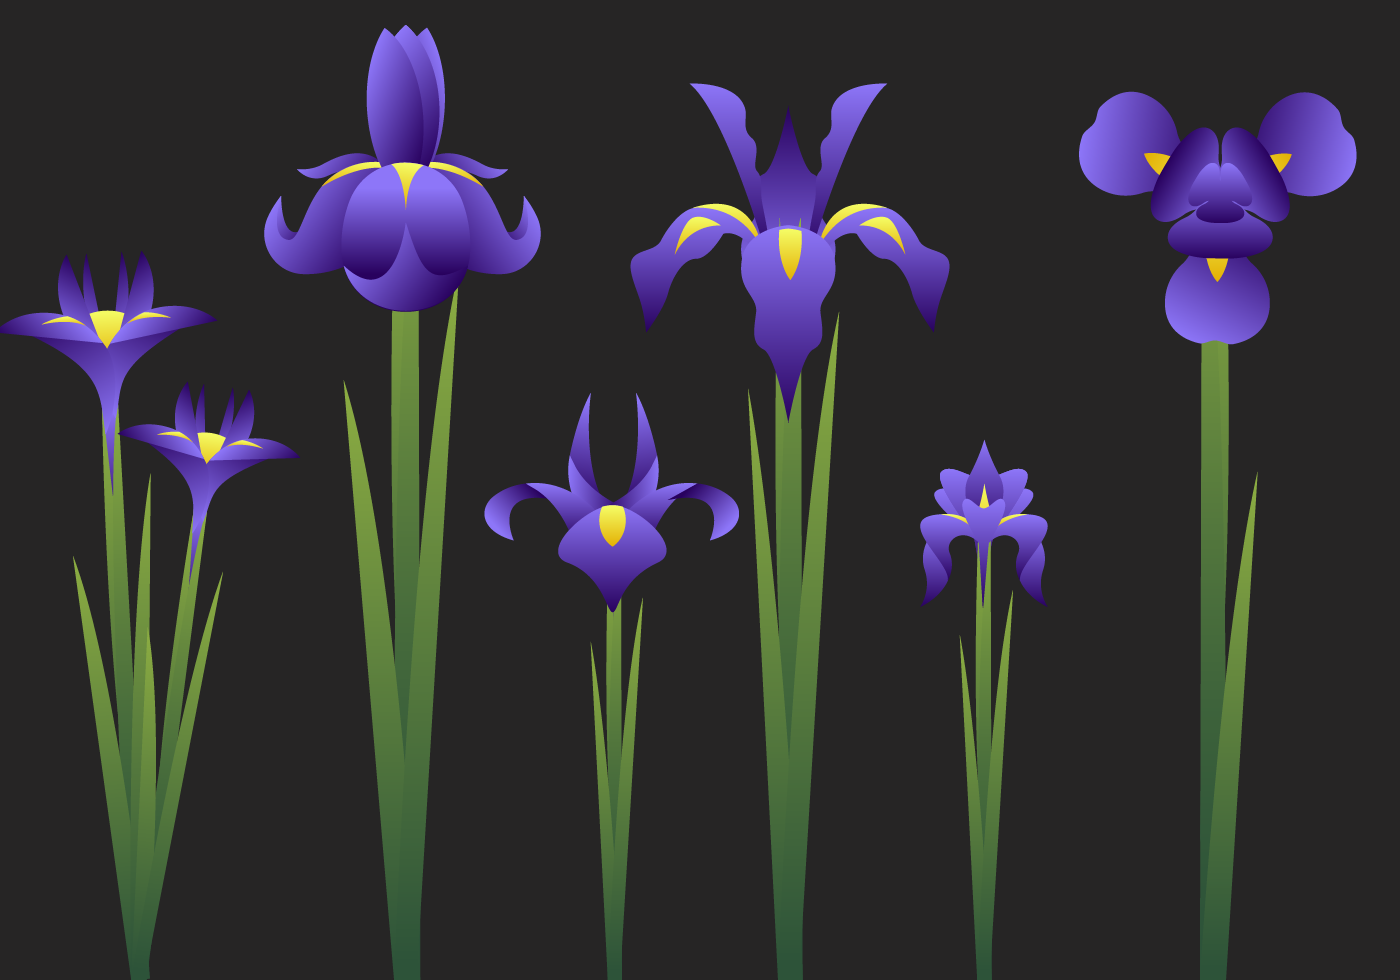 Beautiful Iris Flower Vector - Download Free Vectors ...